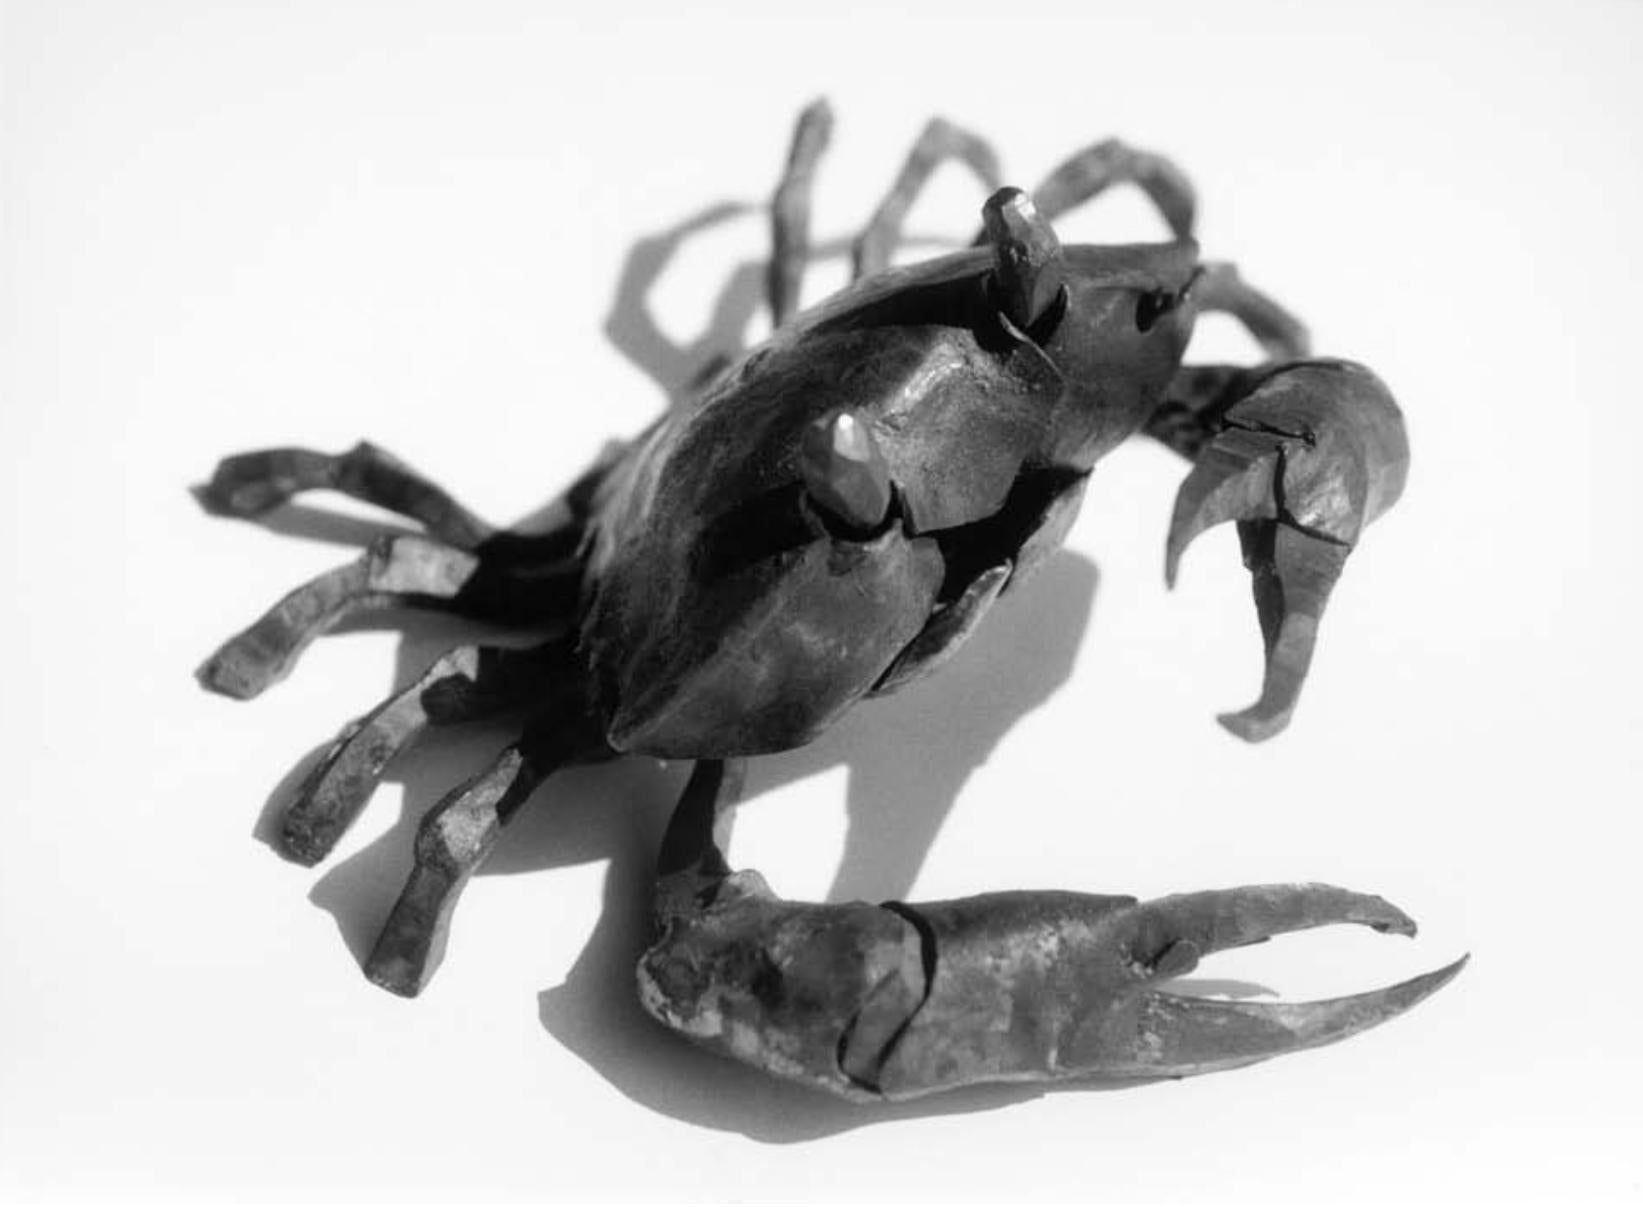 La marche des crabes, série de sculptures en fer forgé d'un forgeron italien - Sculpture de Ivan Zanoni